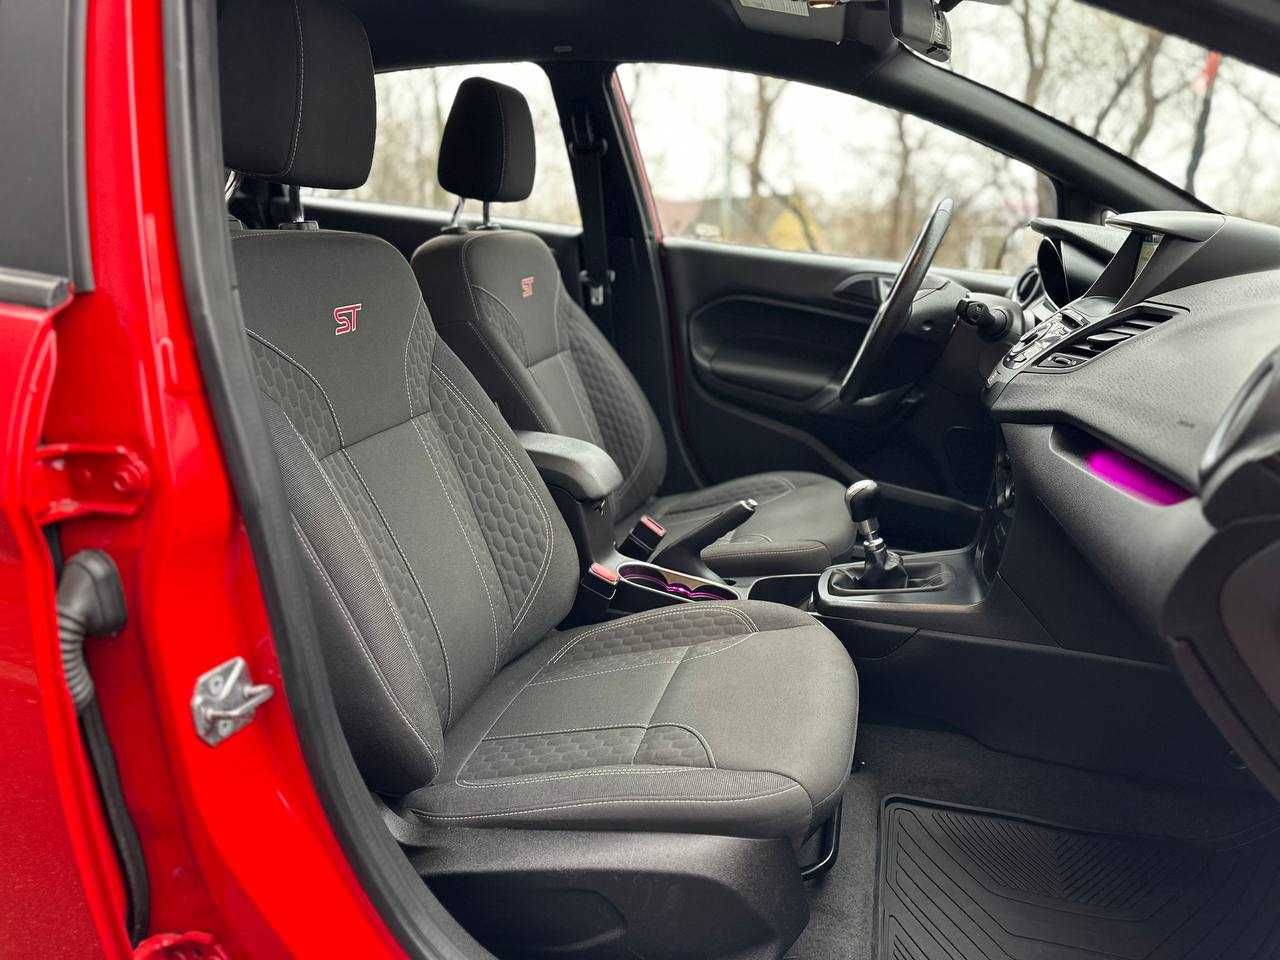 Ford Fiesta ST, 2016 рік, 1.6 бензин, механіка 6-ст.